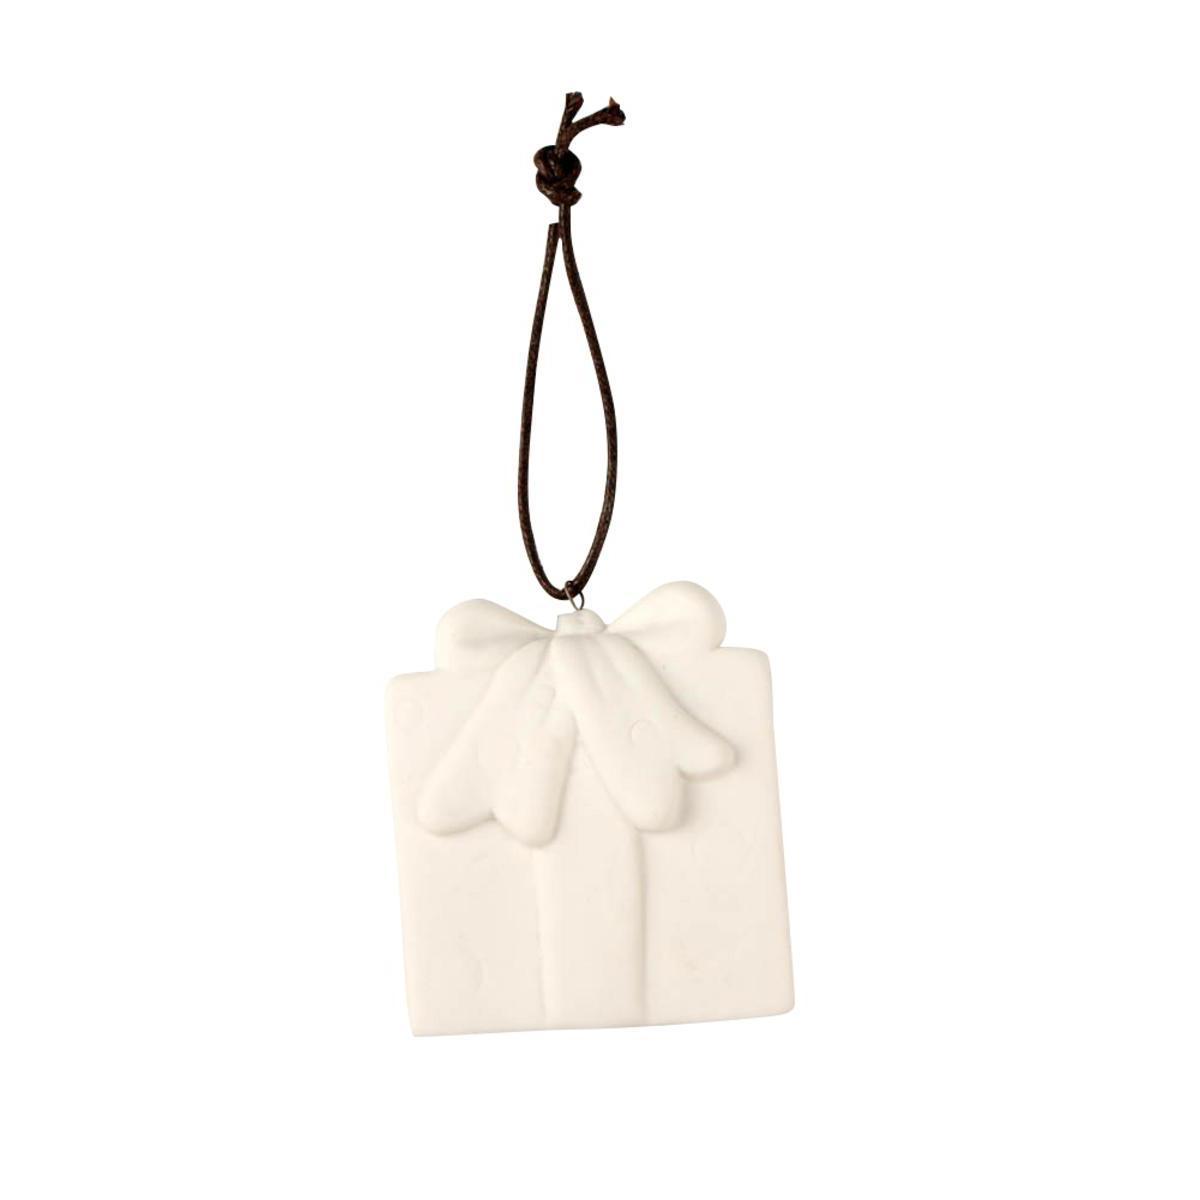 Cadeau à suspendre - Céramique - 9,8 x 5,5 x 5 cm - Blanc